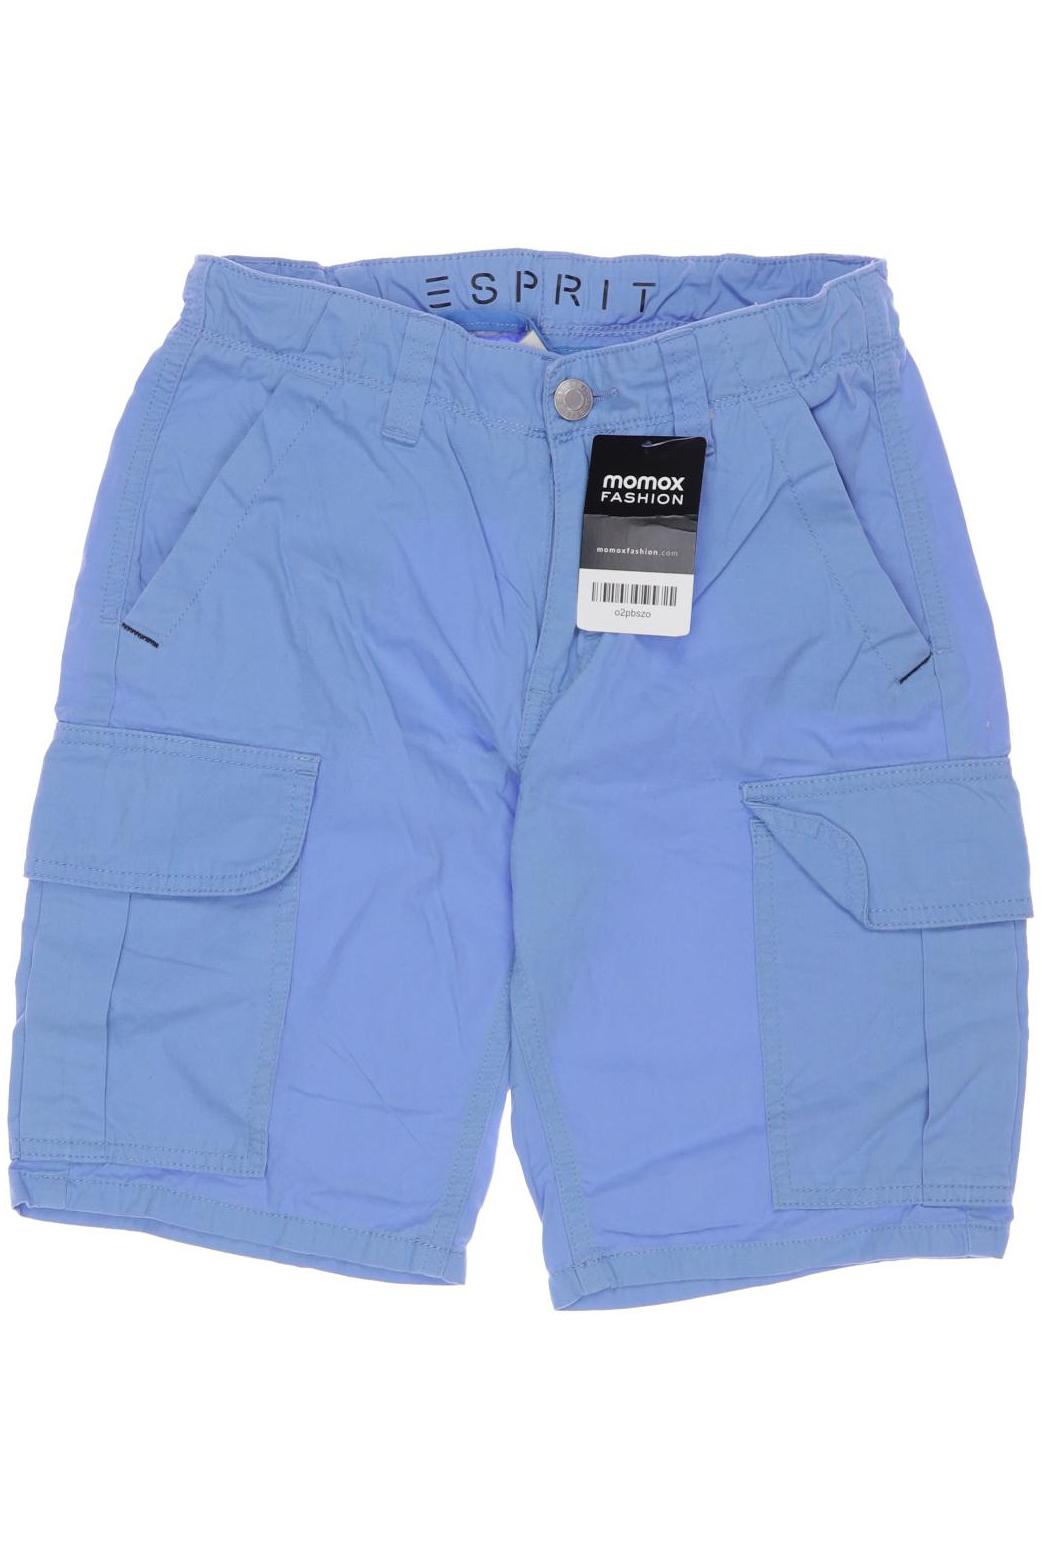 Esprit Jungen Shorts, blau von Esprit